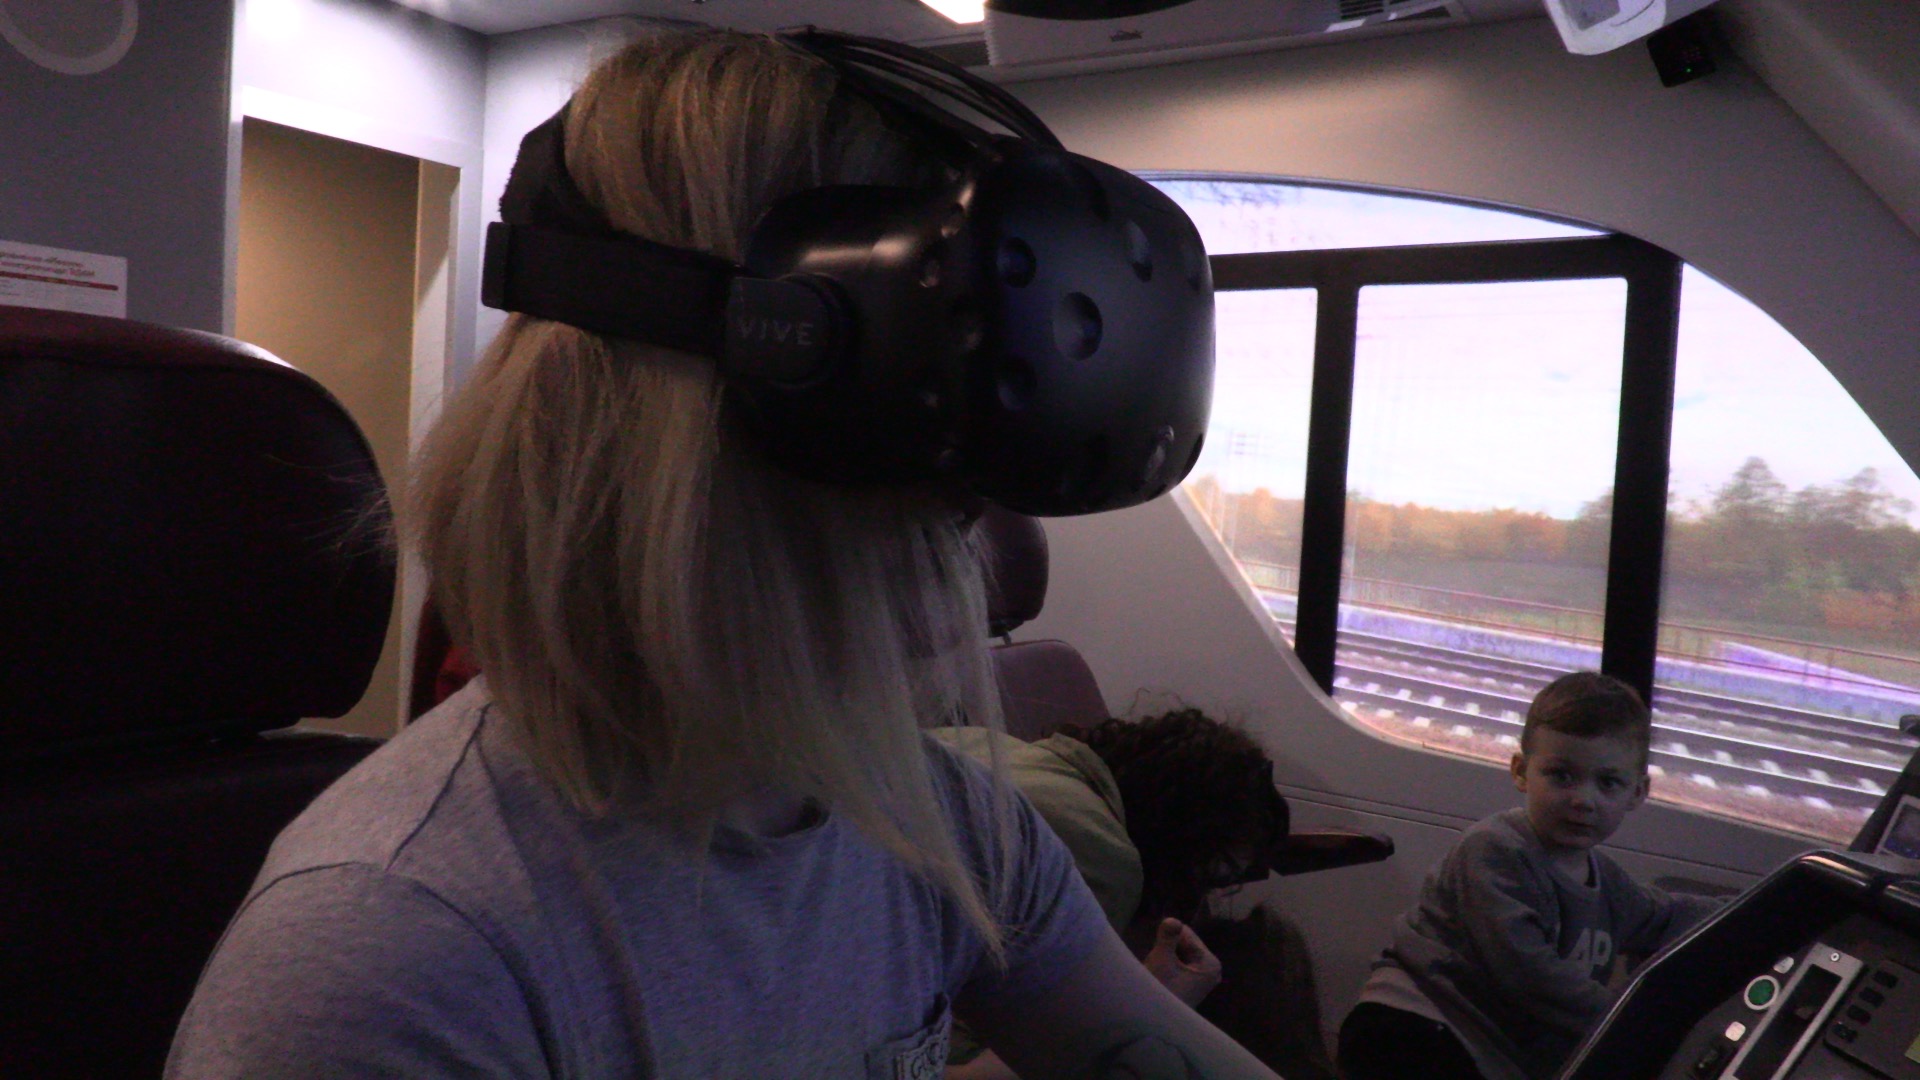 В VR очках HTC Vive можно перенестись в виртуальную кабину.